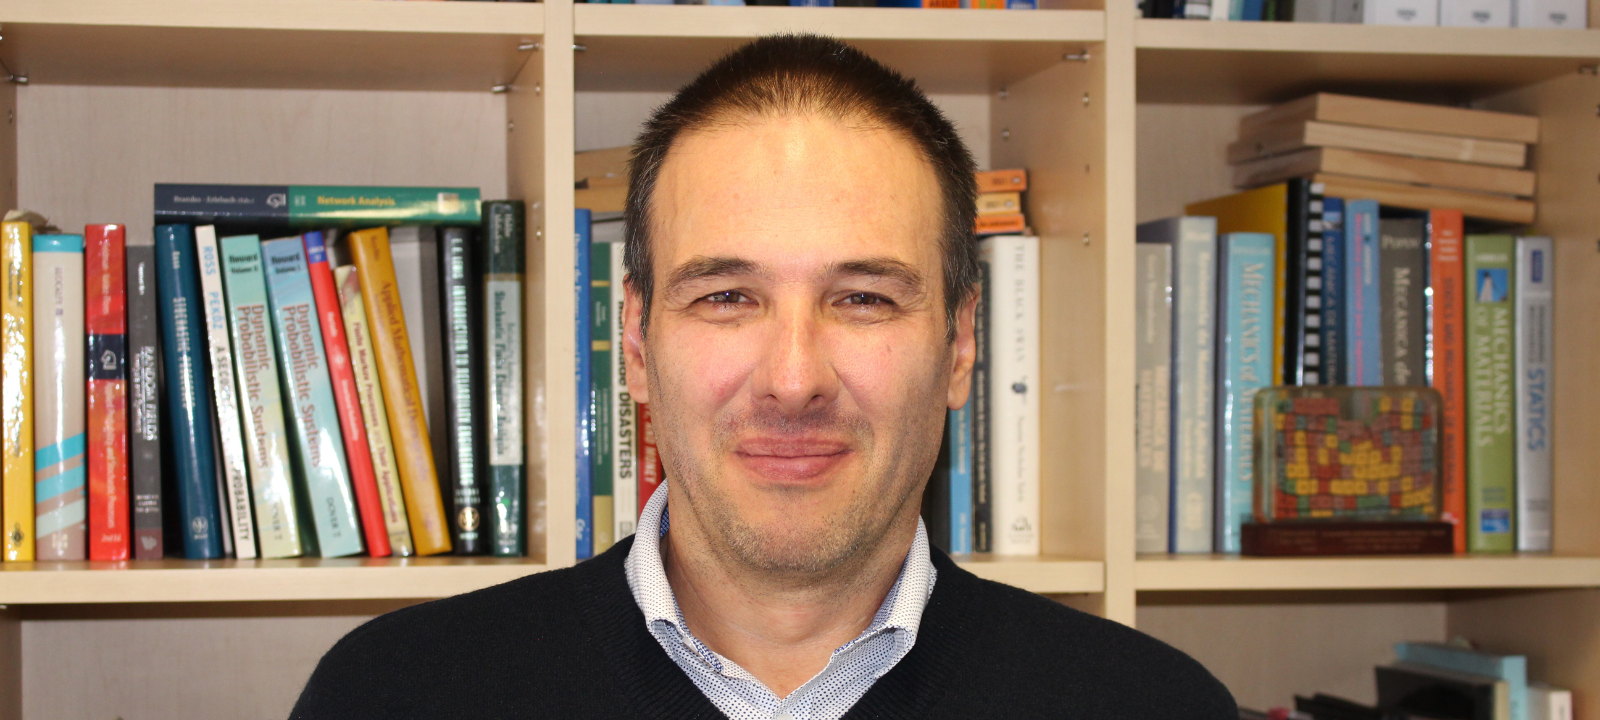 Mauricio Sánchez-Silva, coautor en nuevo libro con editorial Springer 